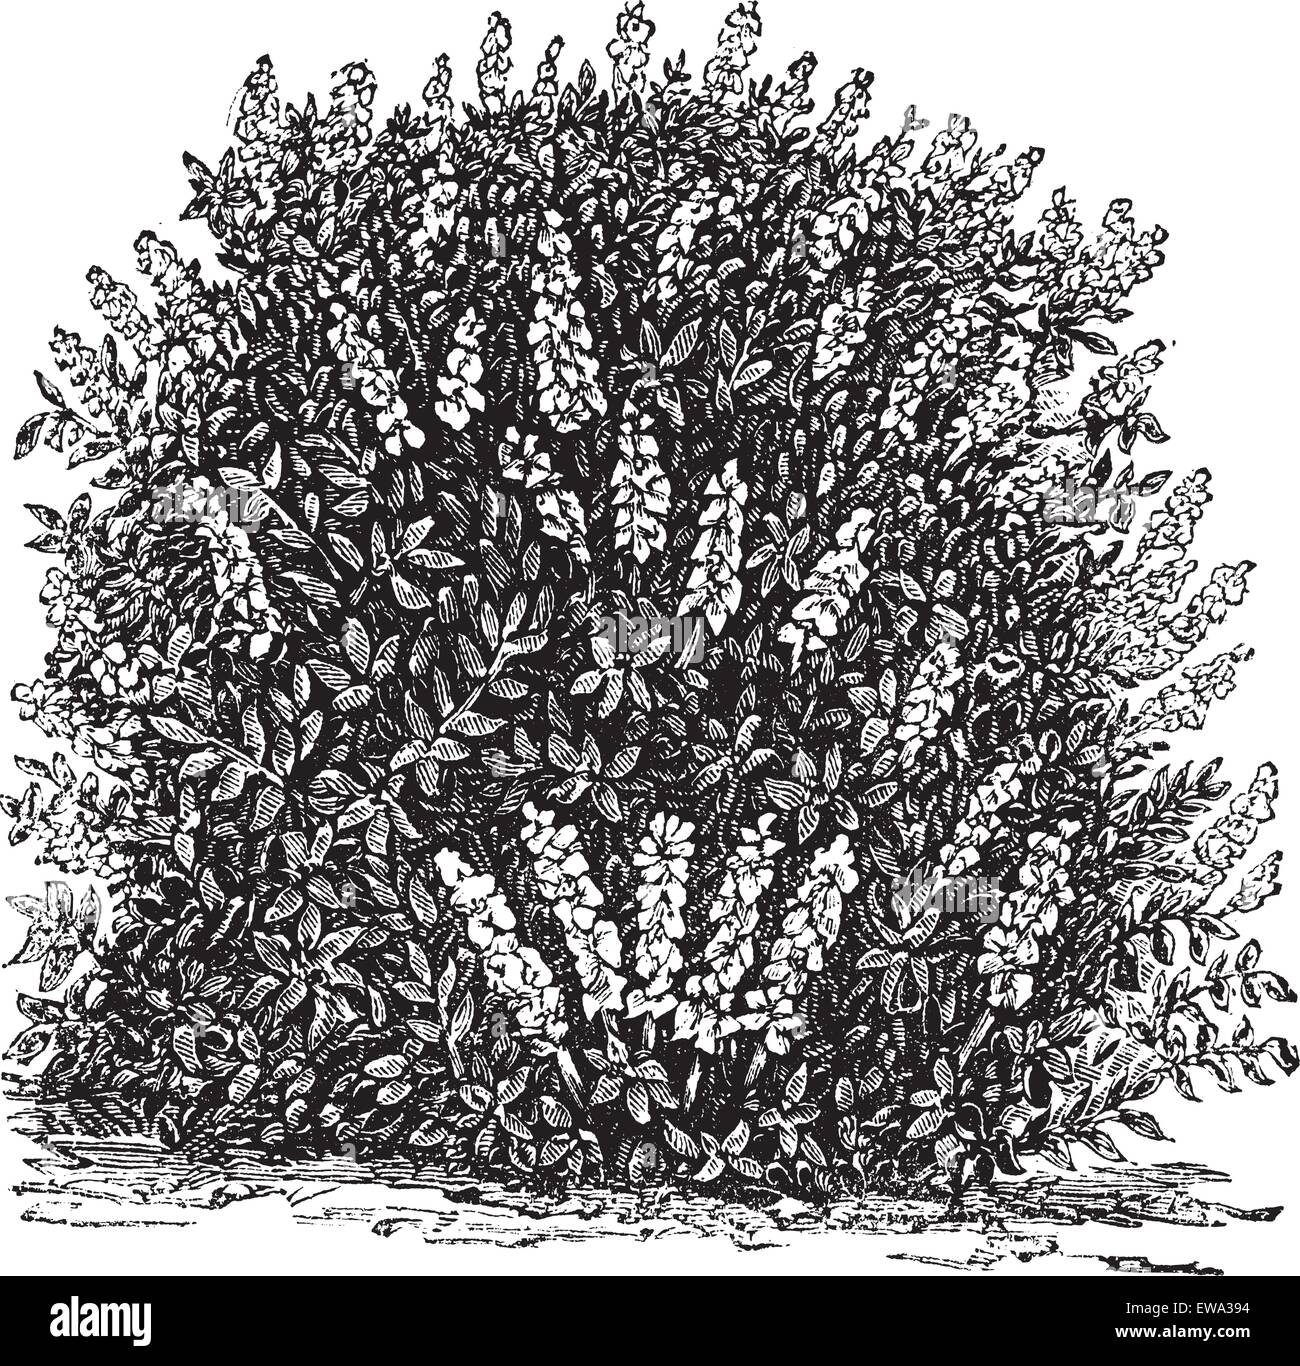 Bottlebrush Buckeye or Aesculus parviflora or Aesculus macrostachya or Pavia macrostachya, vintage engraving. Old engraved illustration of Bottlebrush Buckeye. Stock Vector